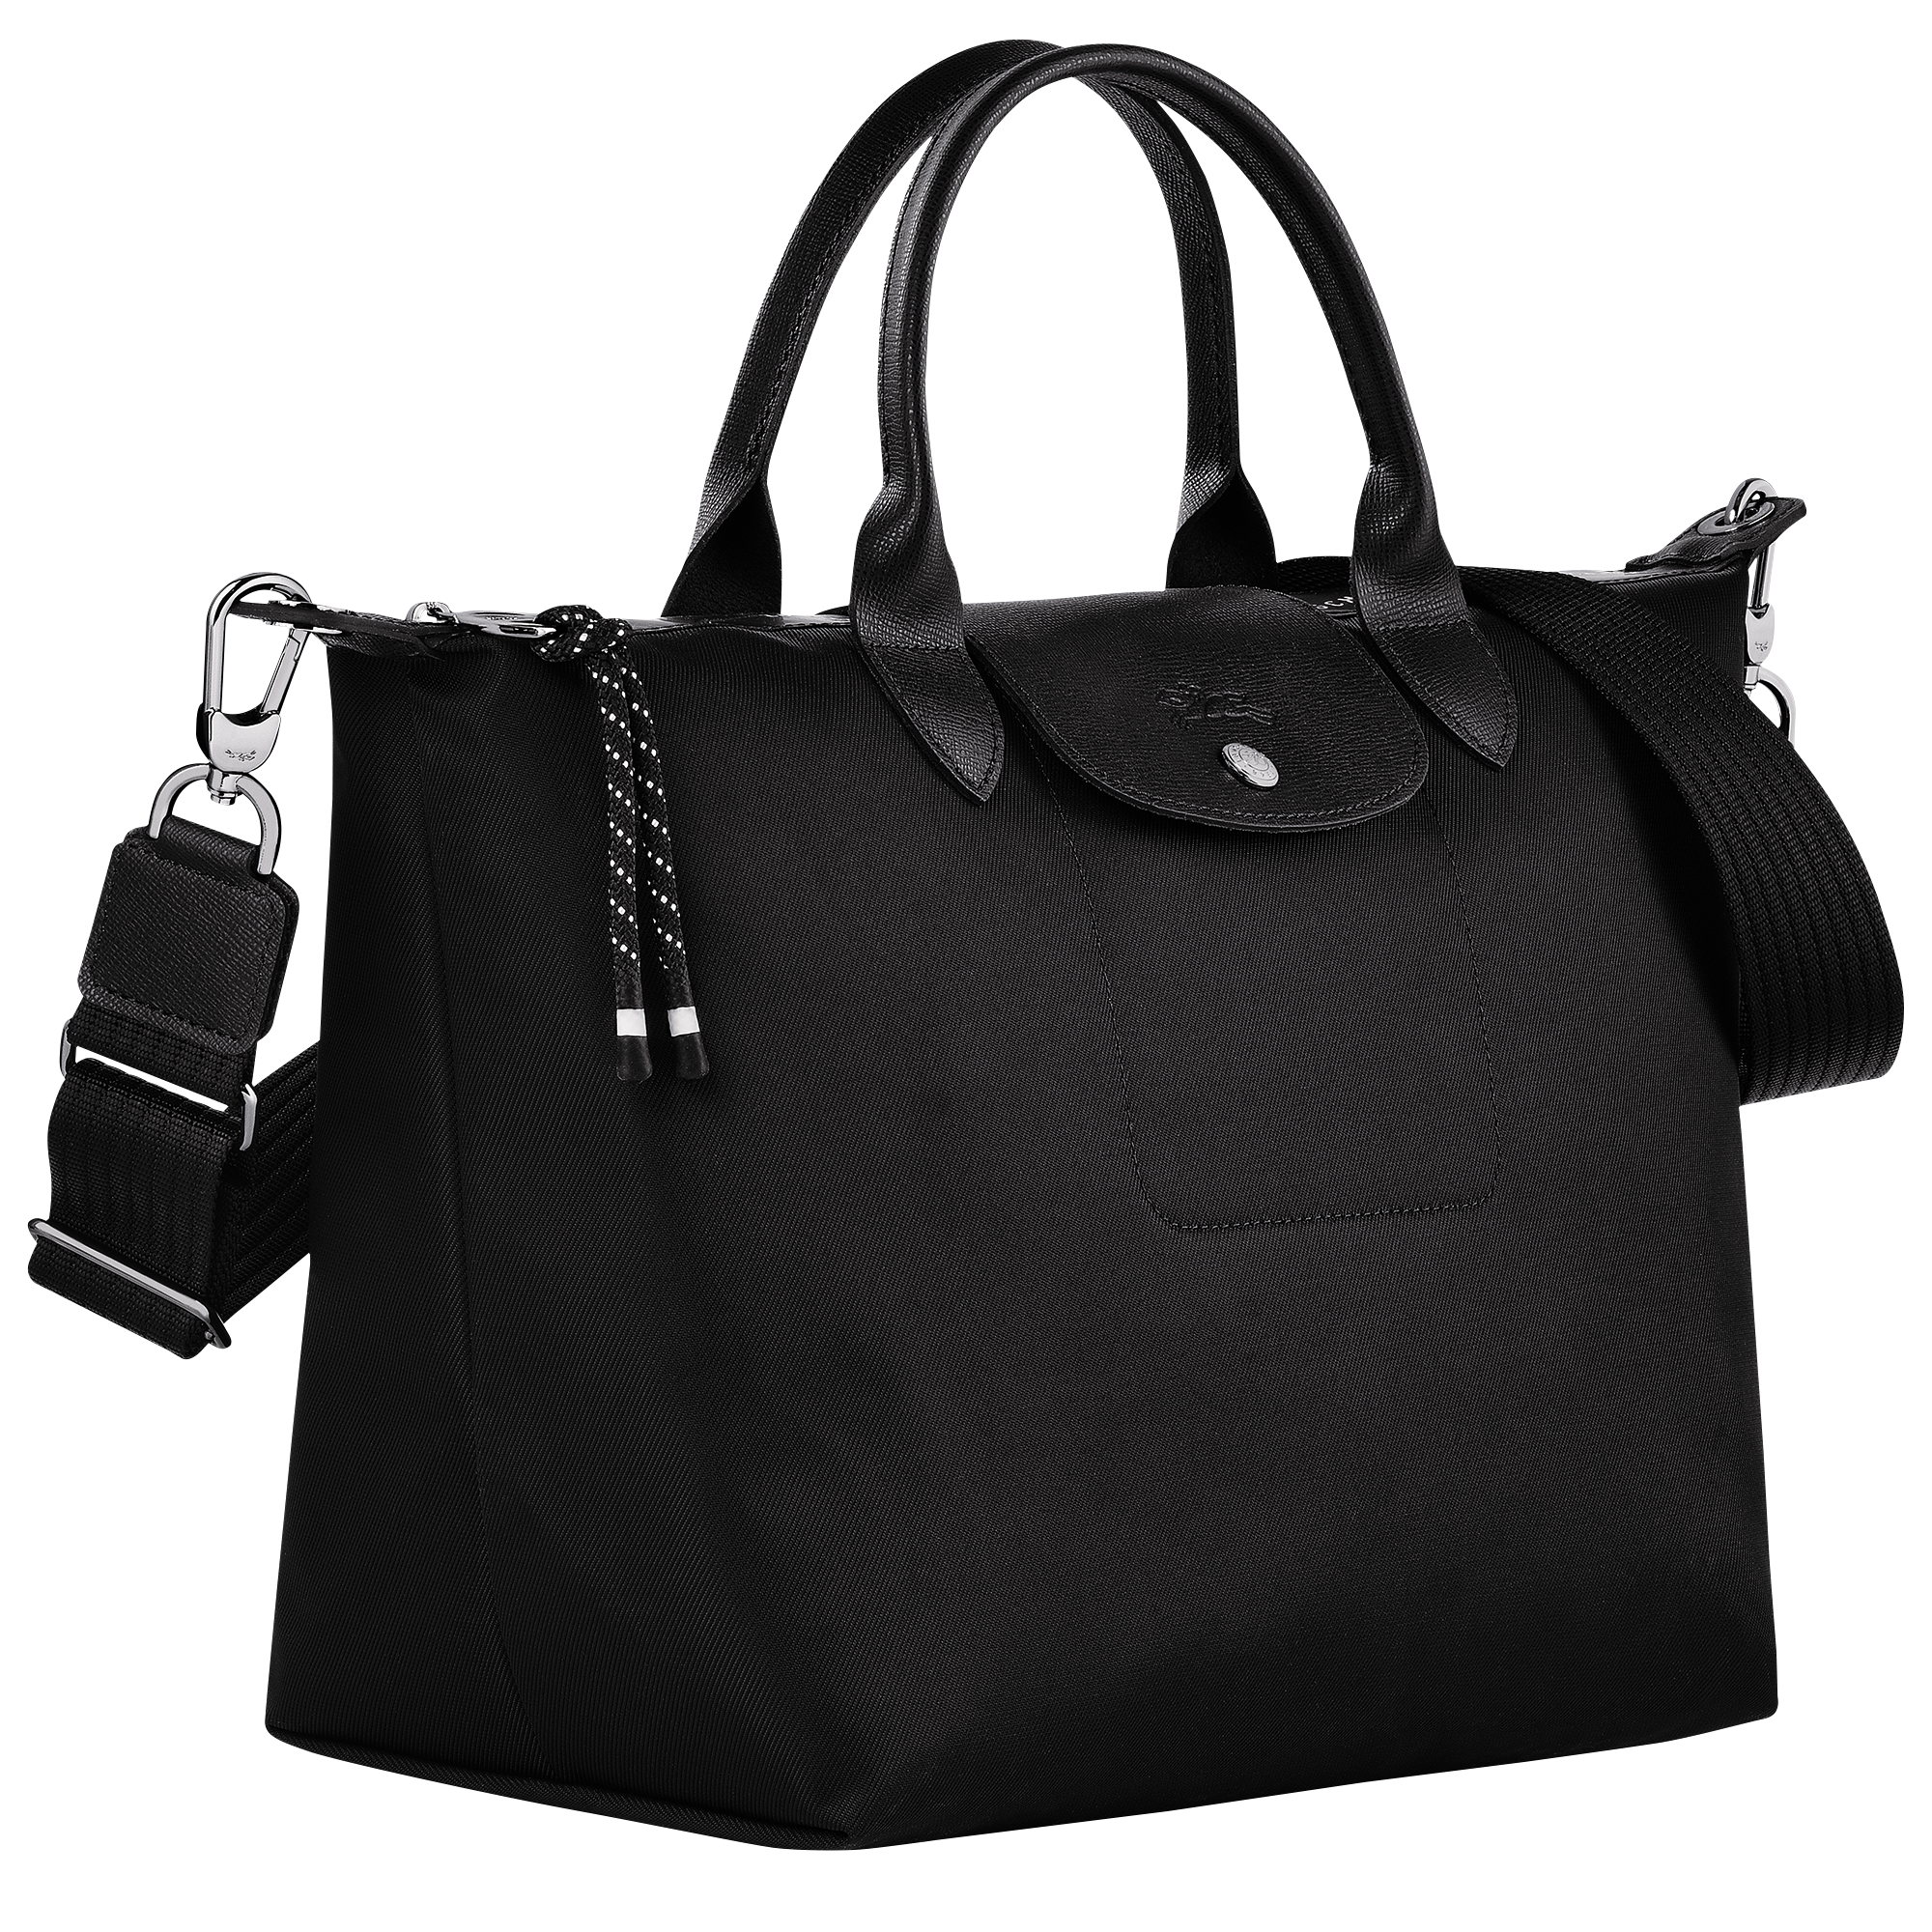  Longchamp Medium Shoulder Tote - Le Pliage - Black